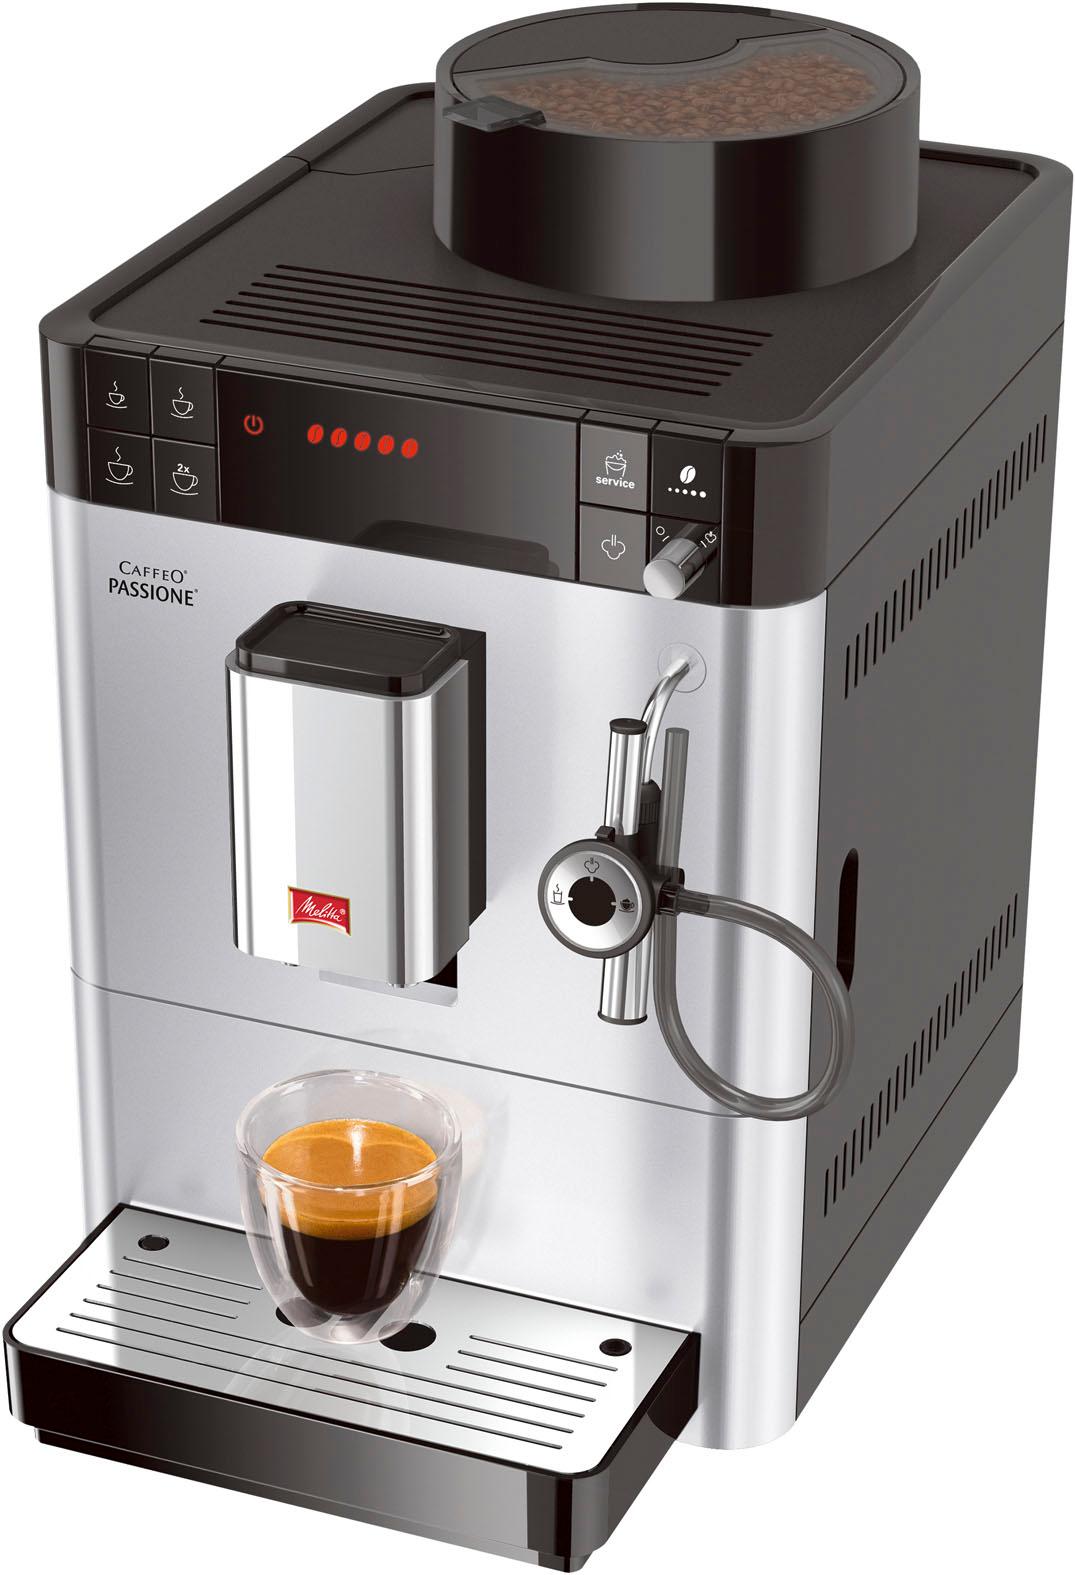 Melitta Kaffeevollautomat "Passione One Touch F53/1-101, silber", Tassengenau frisch gemahlen, Service-Taste für Entkalkung & Reinigung